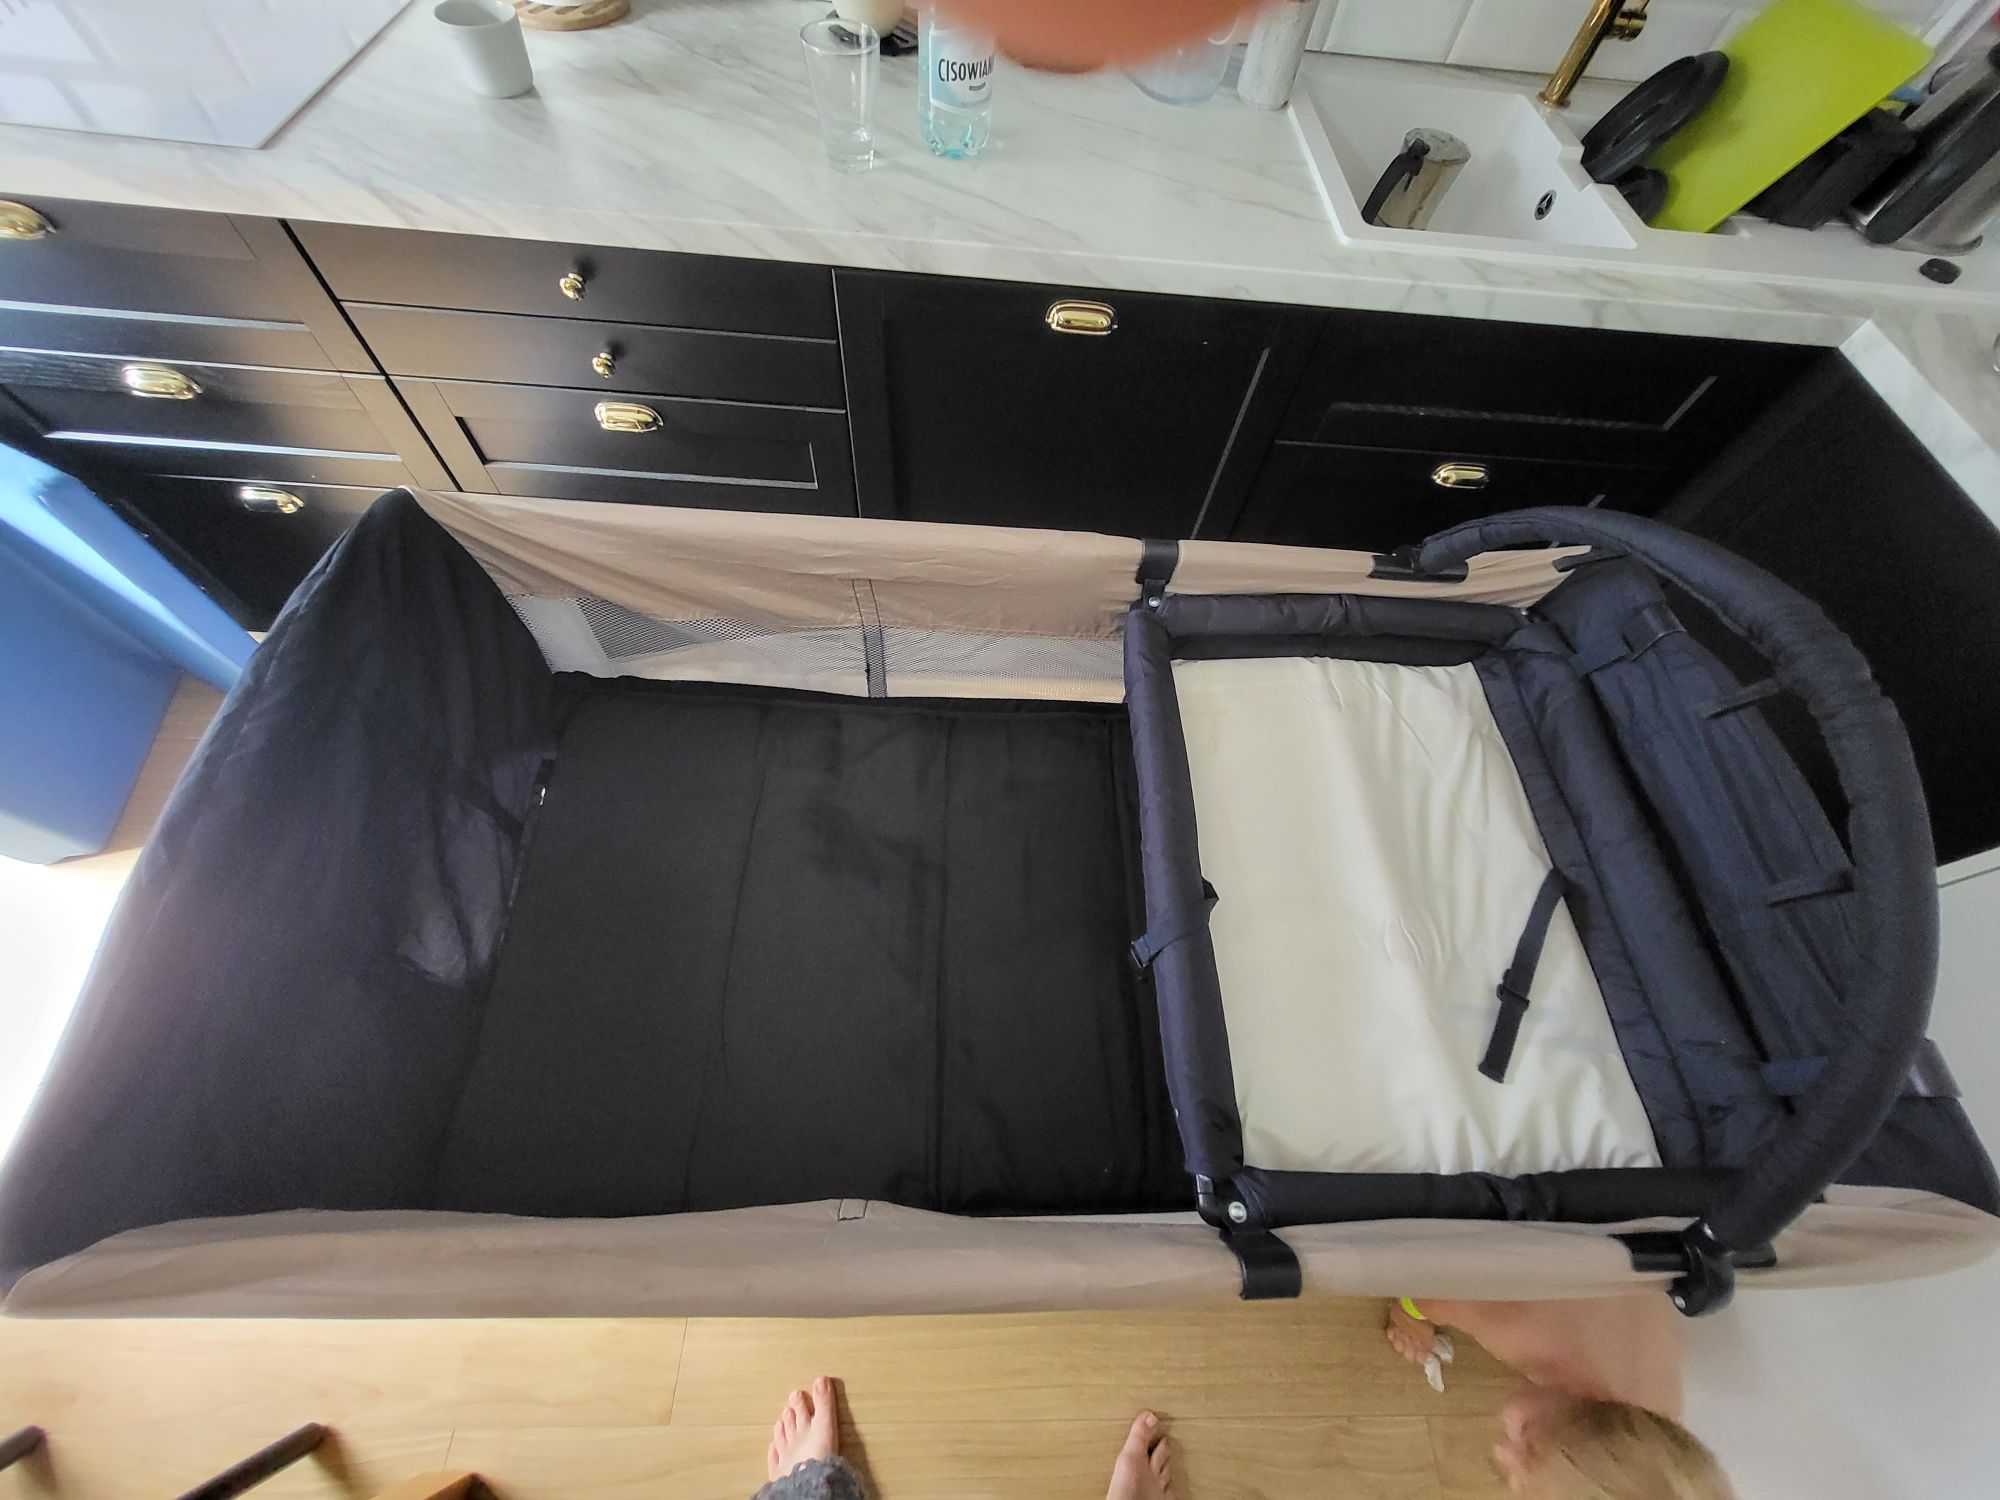 Łóżeczko turystyczne Brevi - 2 poziomy, przewijak, dodatkowy materac